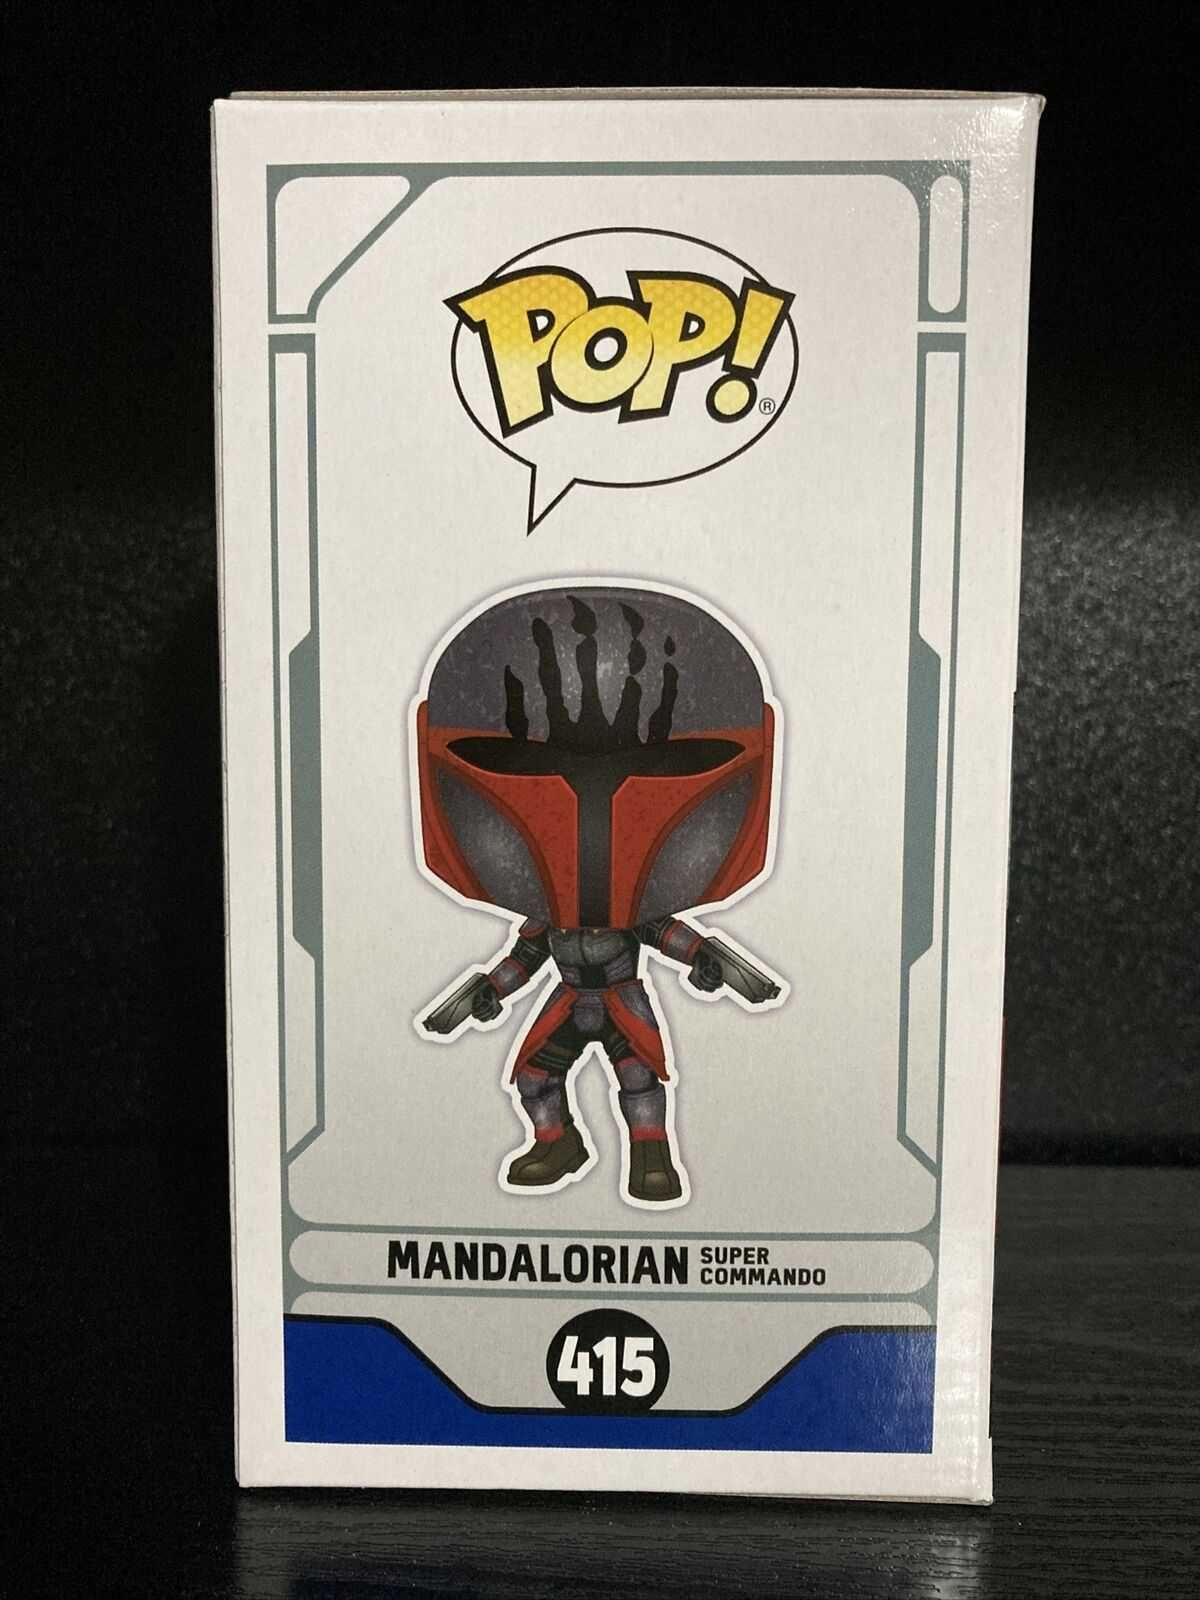 Star Wars 415 Mandalorian Super Comando Limited Edition - Funko Pop!